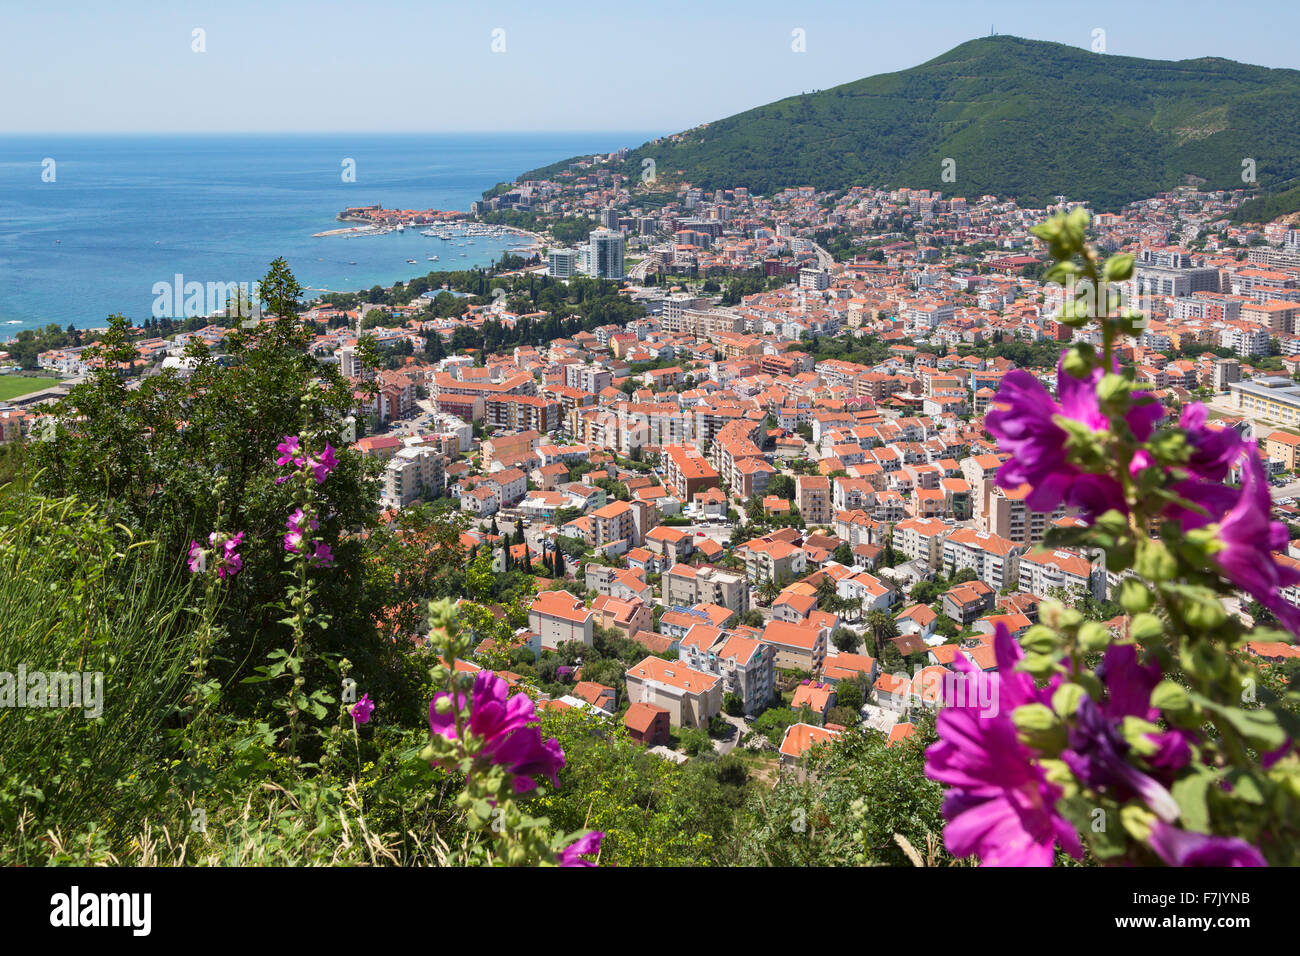 Budva, Montenegro. Overall view. Stock Photo